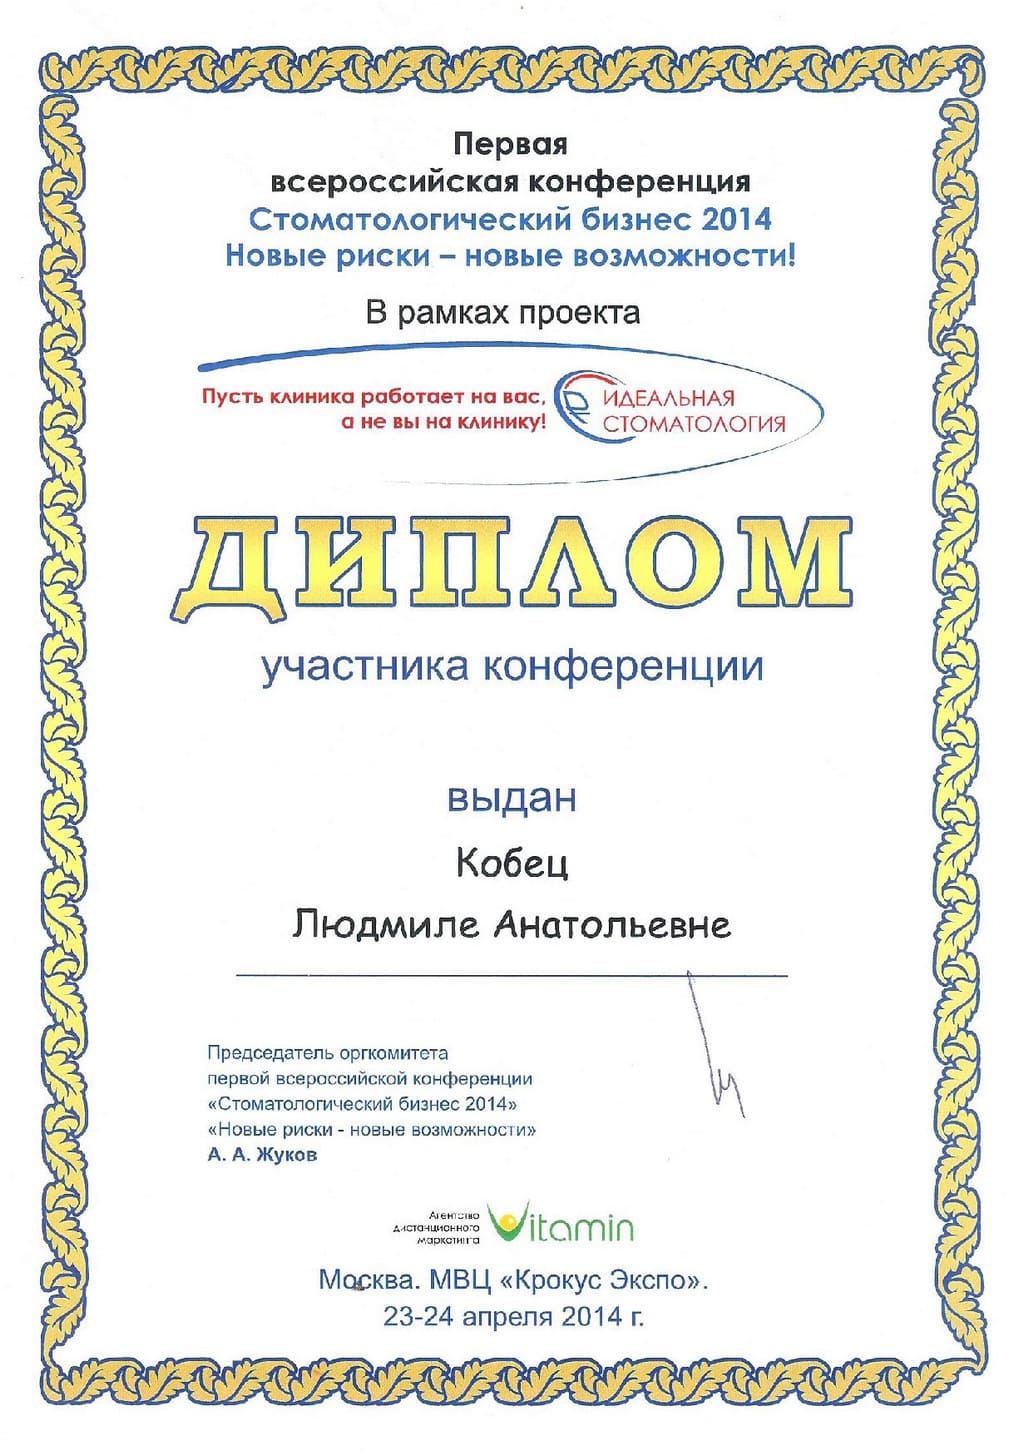 2014_04_23-24_Kobets_L_A_pervaya-vserossijskaya-konferenciya-stomatologicheskij-biznes-2014-novyj-riski-novye-vozmozhnosti.jpg